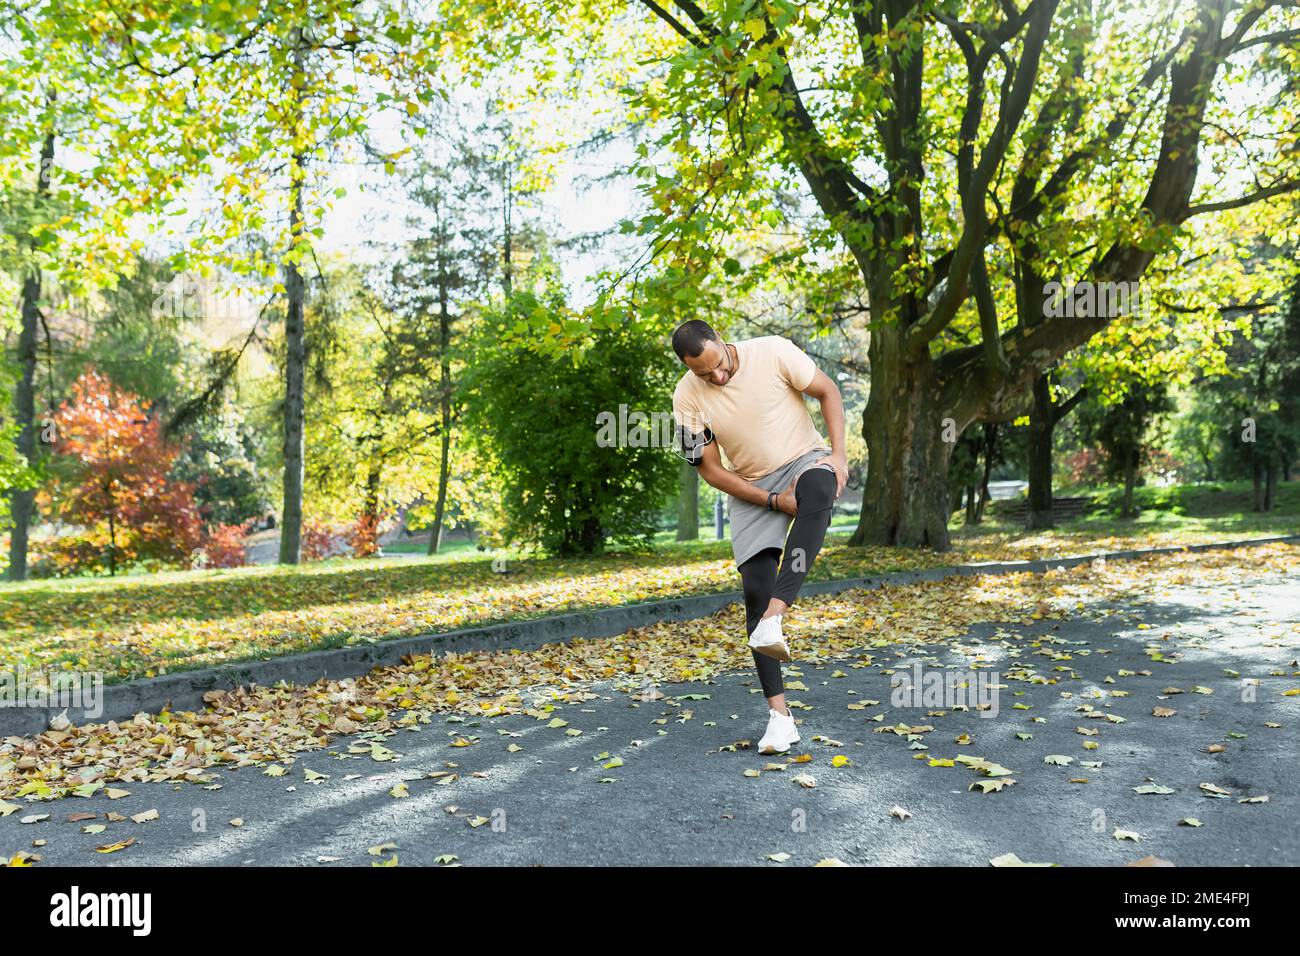 Runner ferito la gamba mentre jogging nel parco vicino agli alberi, l'uomo ispanico ha spasmo muscolare massaggiando il ginocchio, l'uomo è in esecuzione e l'esercizio di fitness in una giornata di sole. Foto Stock